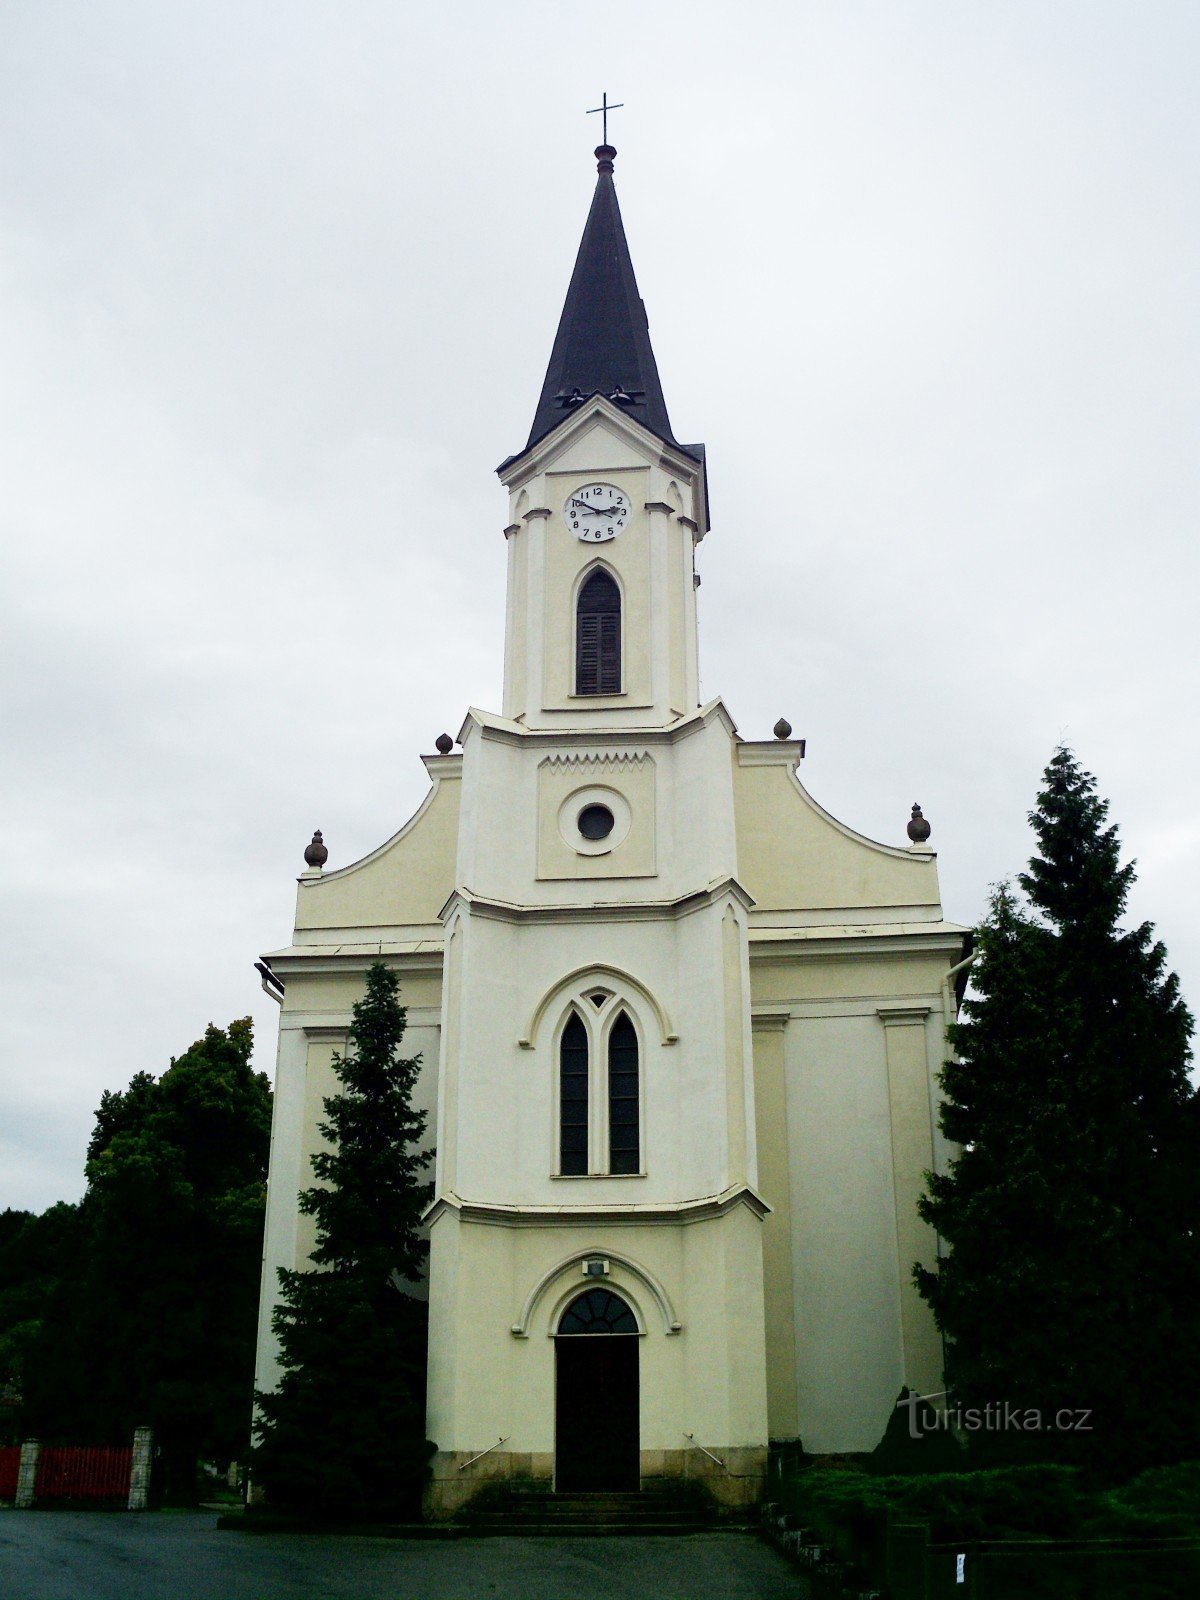 1829 年から 1831 年までの福音派教会